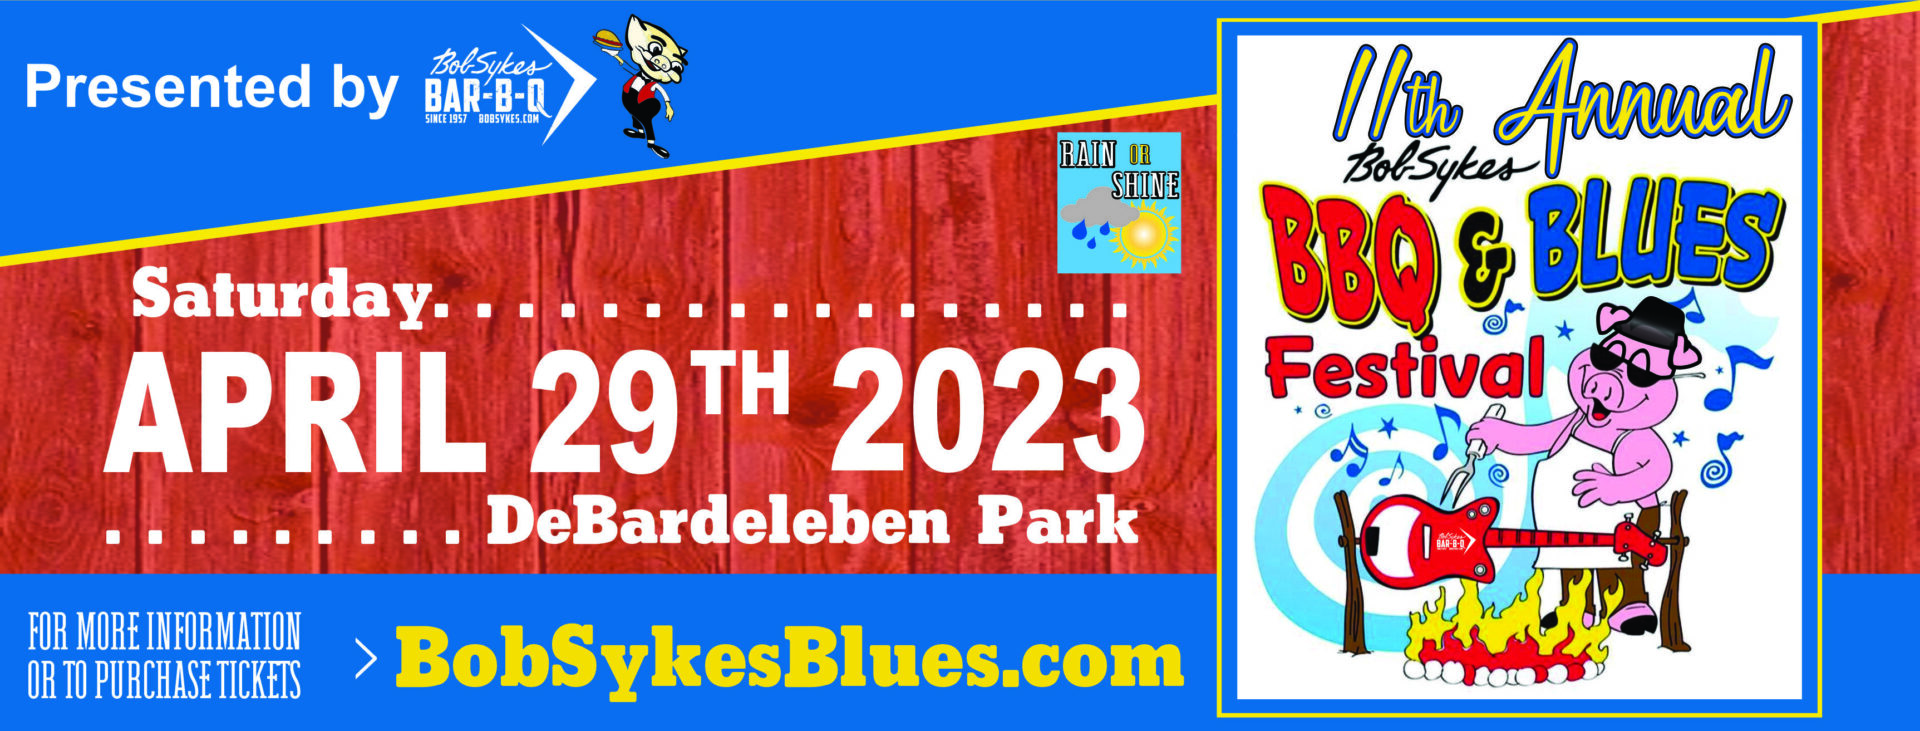 Blues Fest FB 2023 deBardeleben Park